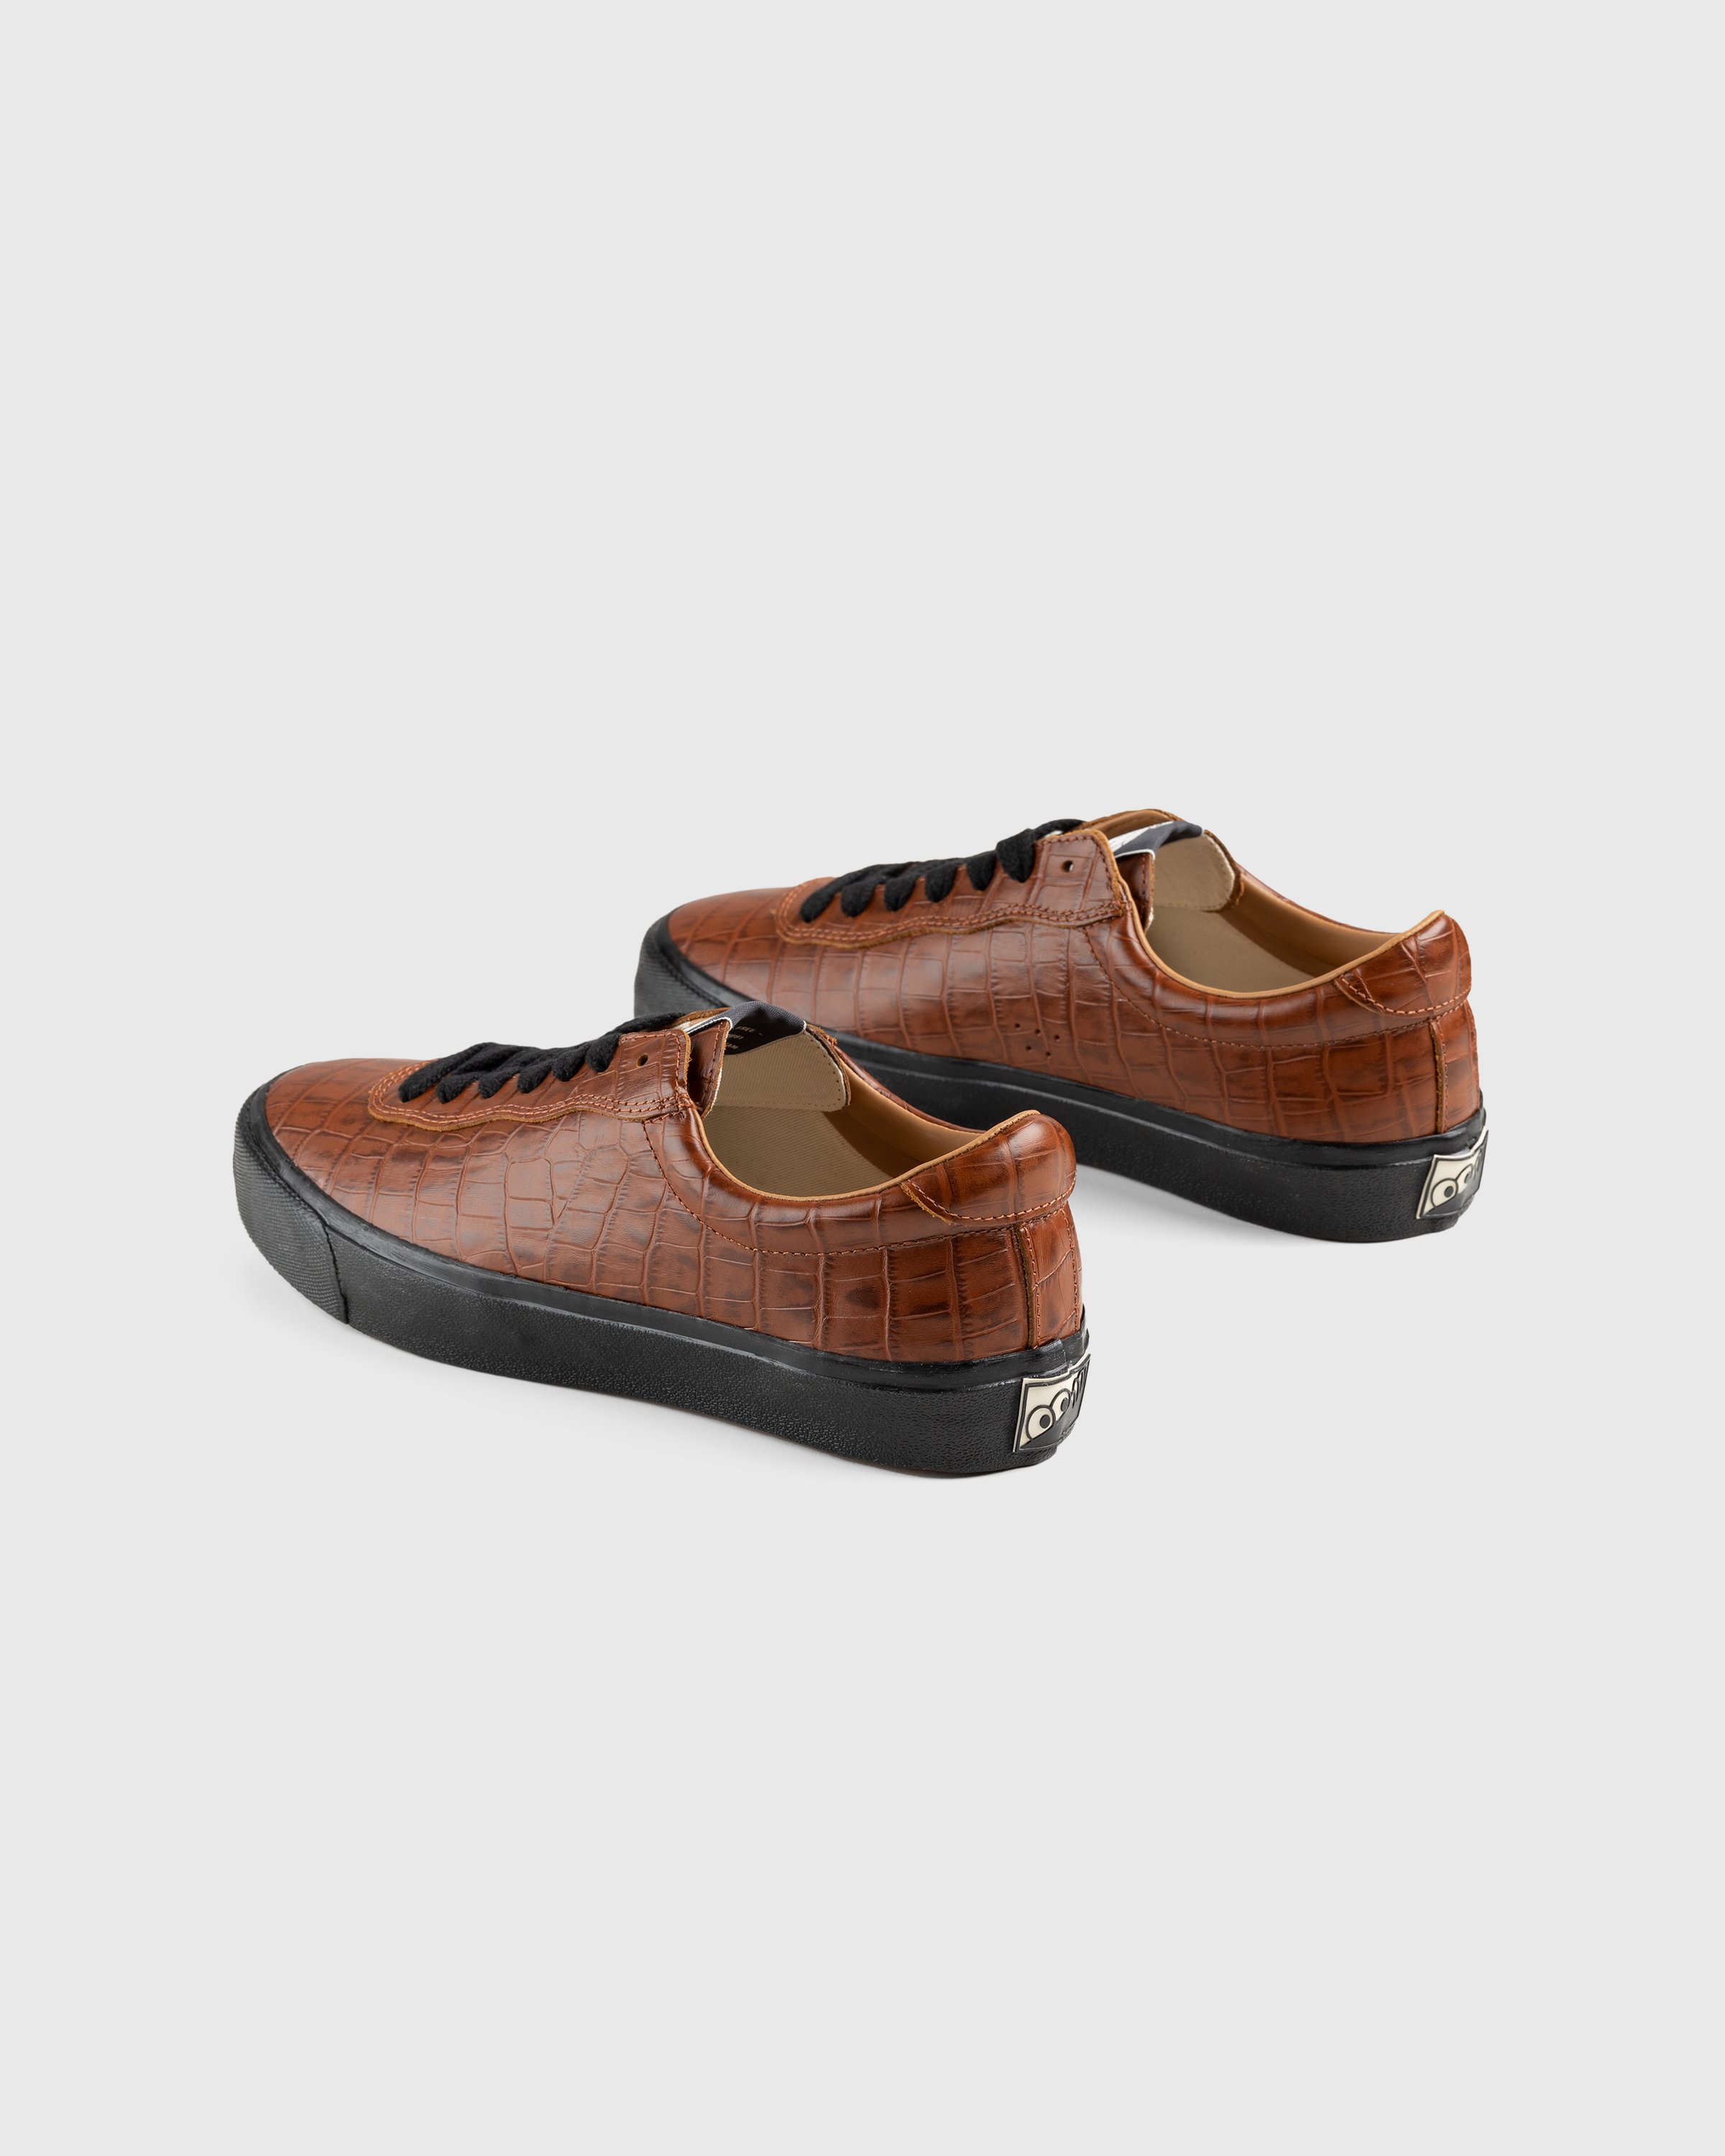 Last Resort AB - VM001 Croc Lo Brown/Black - Footwear - Brown - Image 3